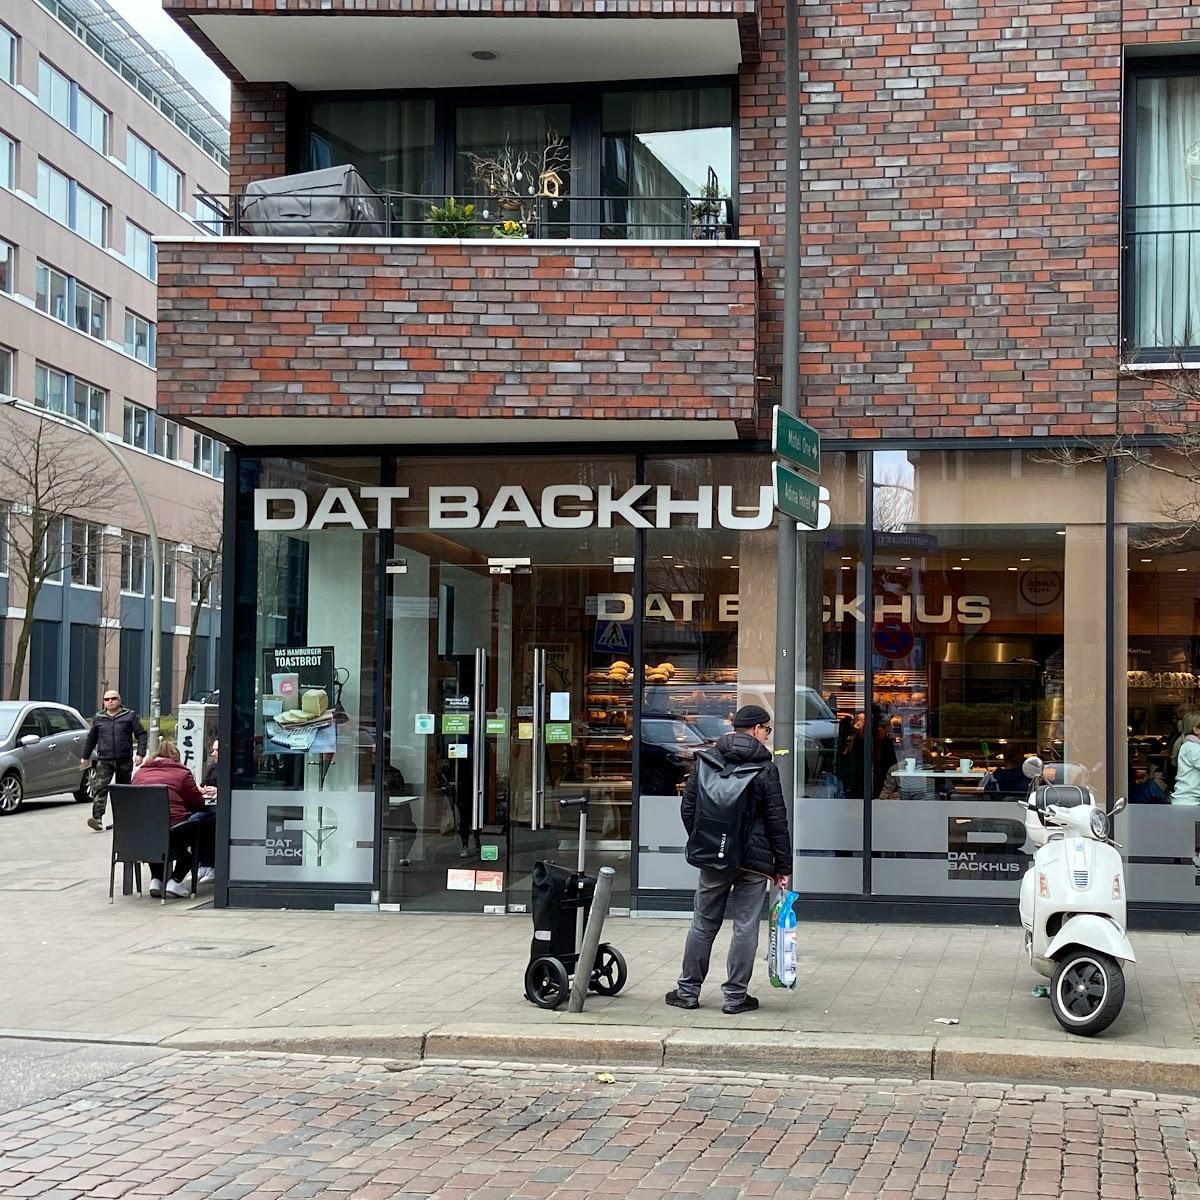 Restaurant "Dat Backhus Neuer Steinweg" in Hamburg